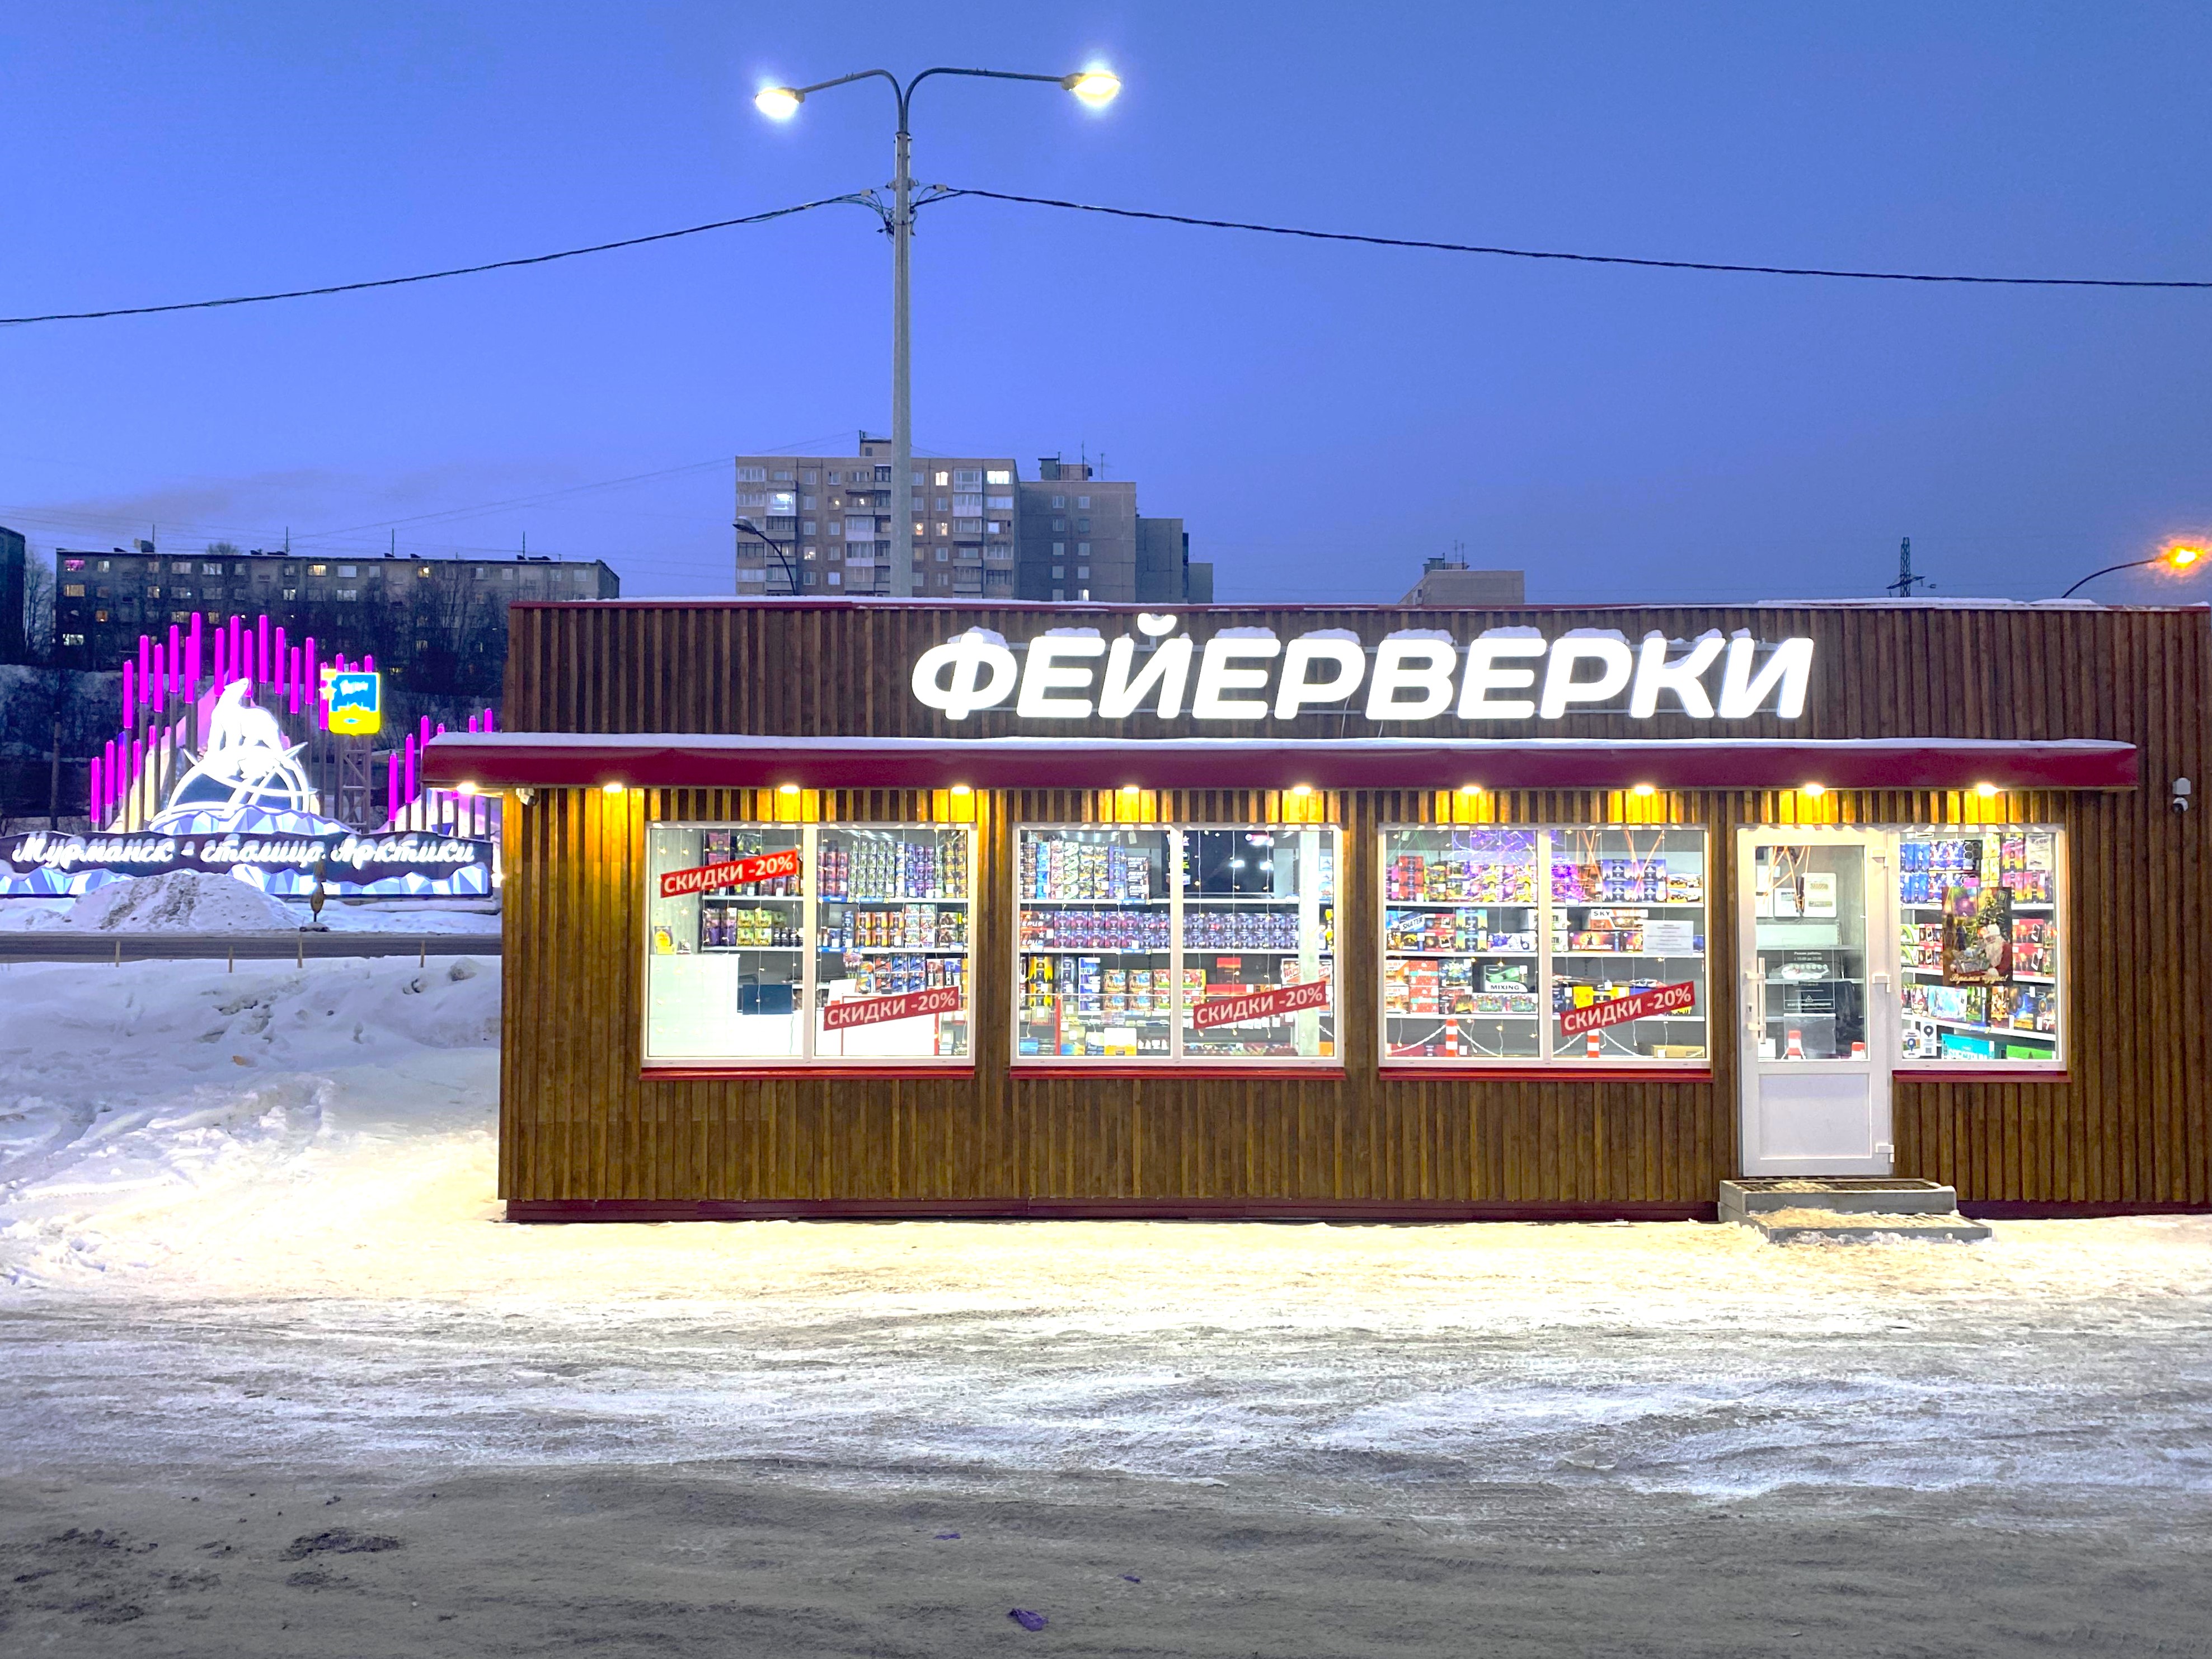 Вакансии: продавец в Мурманске, продавец в магазин